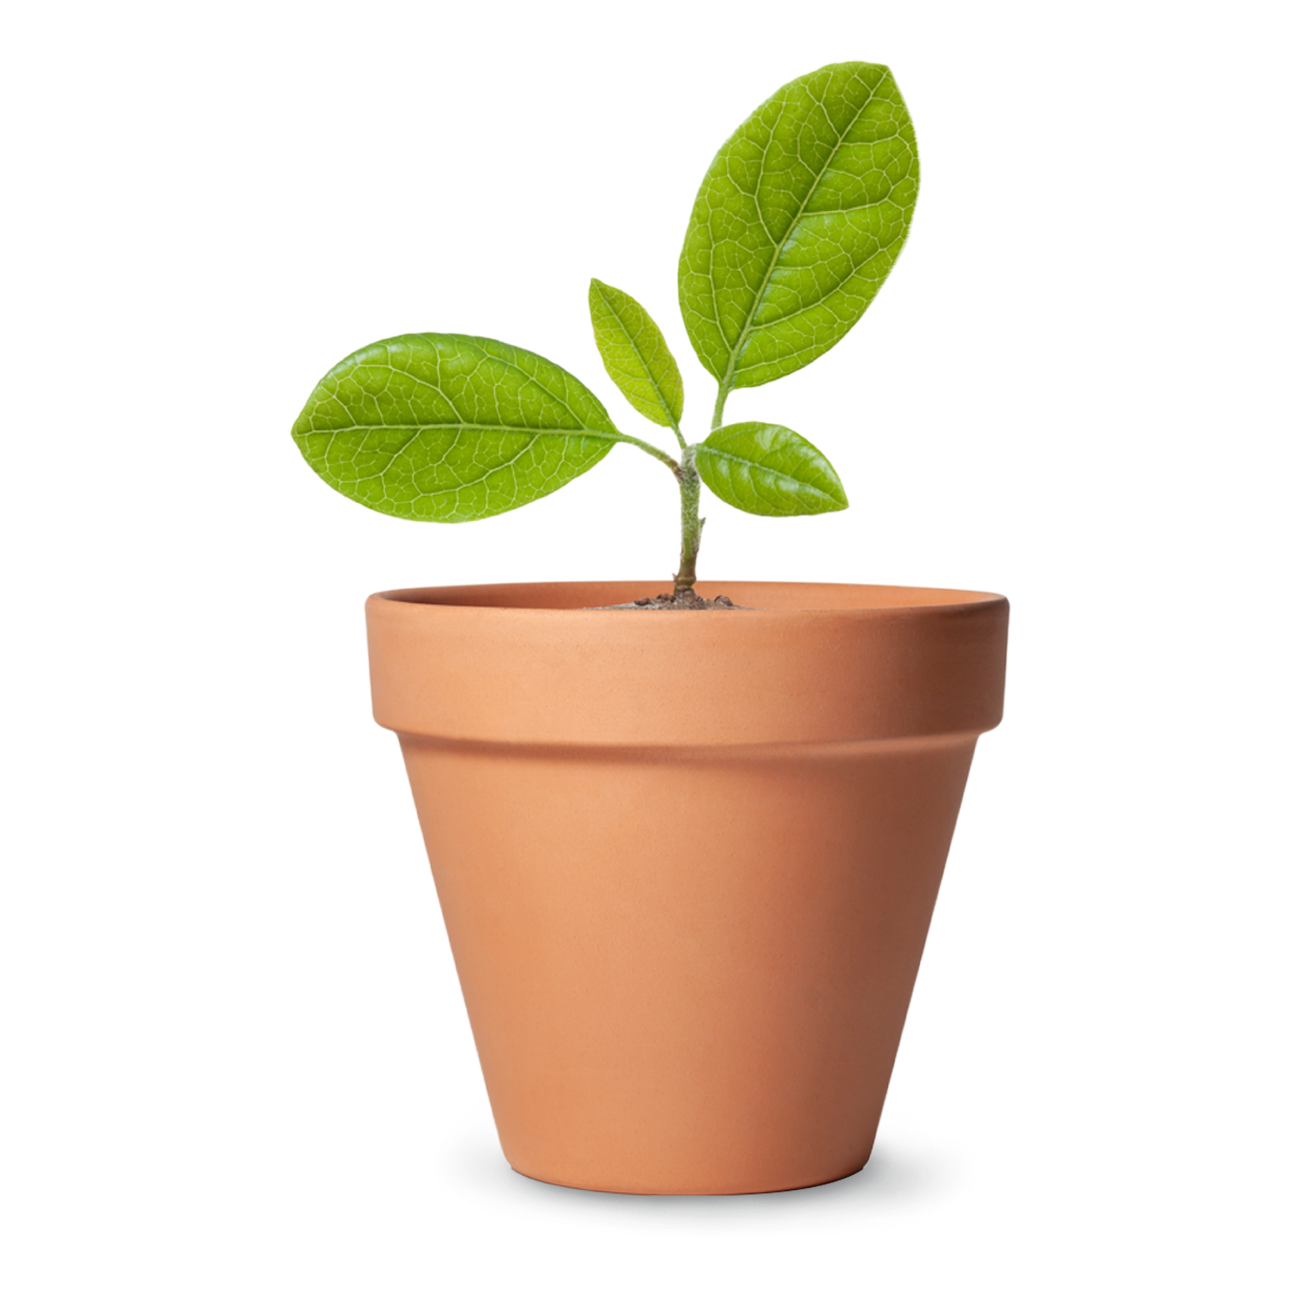 A small plant in ceramic pot